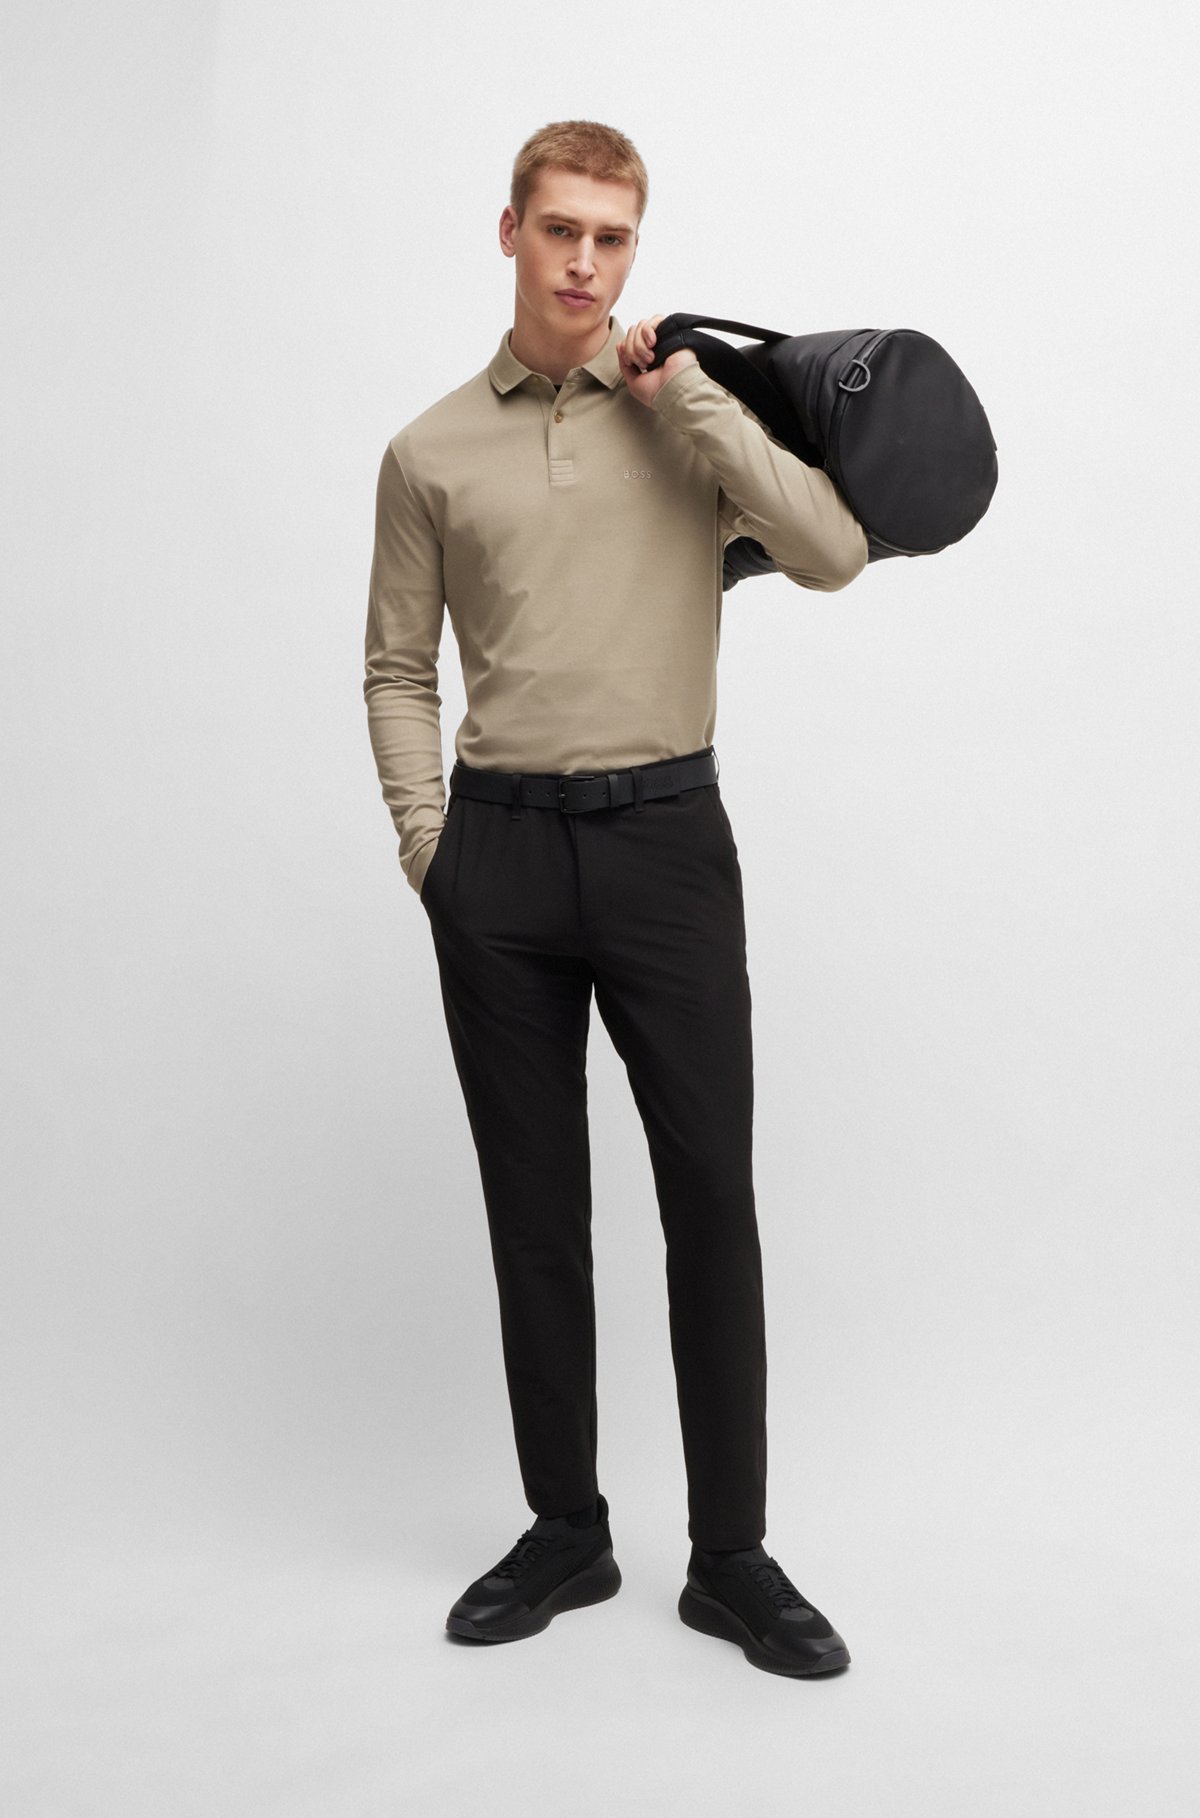 Interlock-cotton polo shirt with tonal logo, Khaki